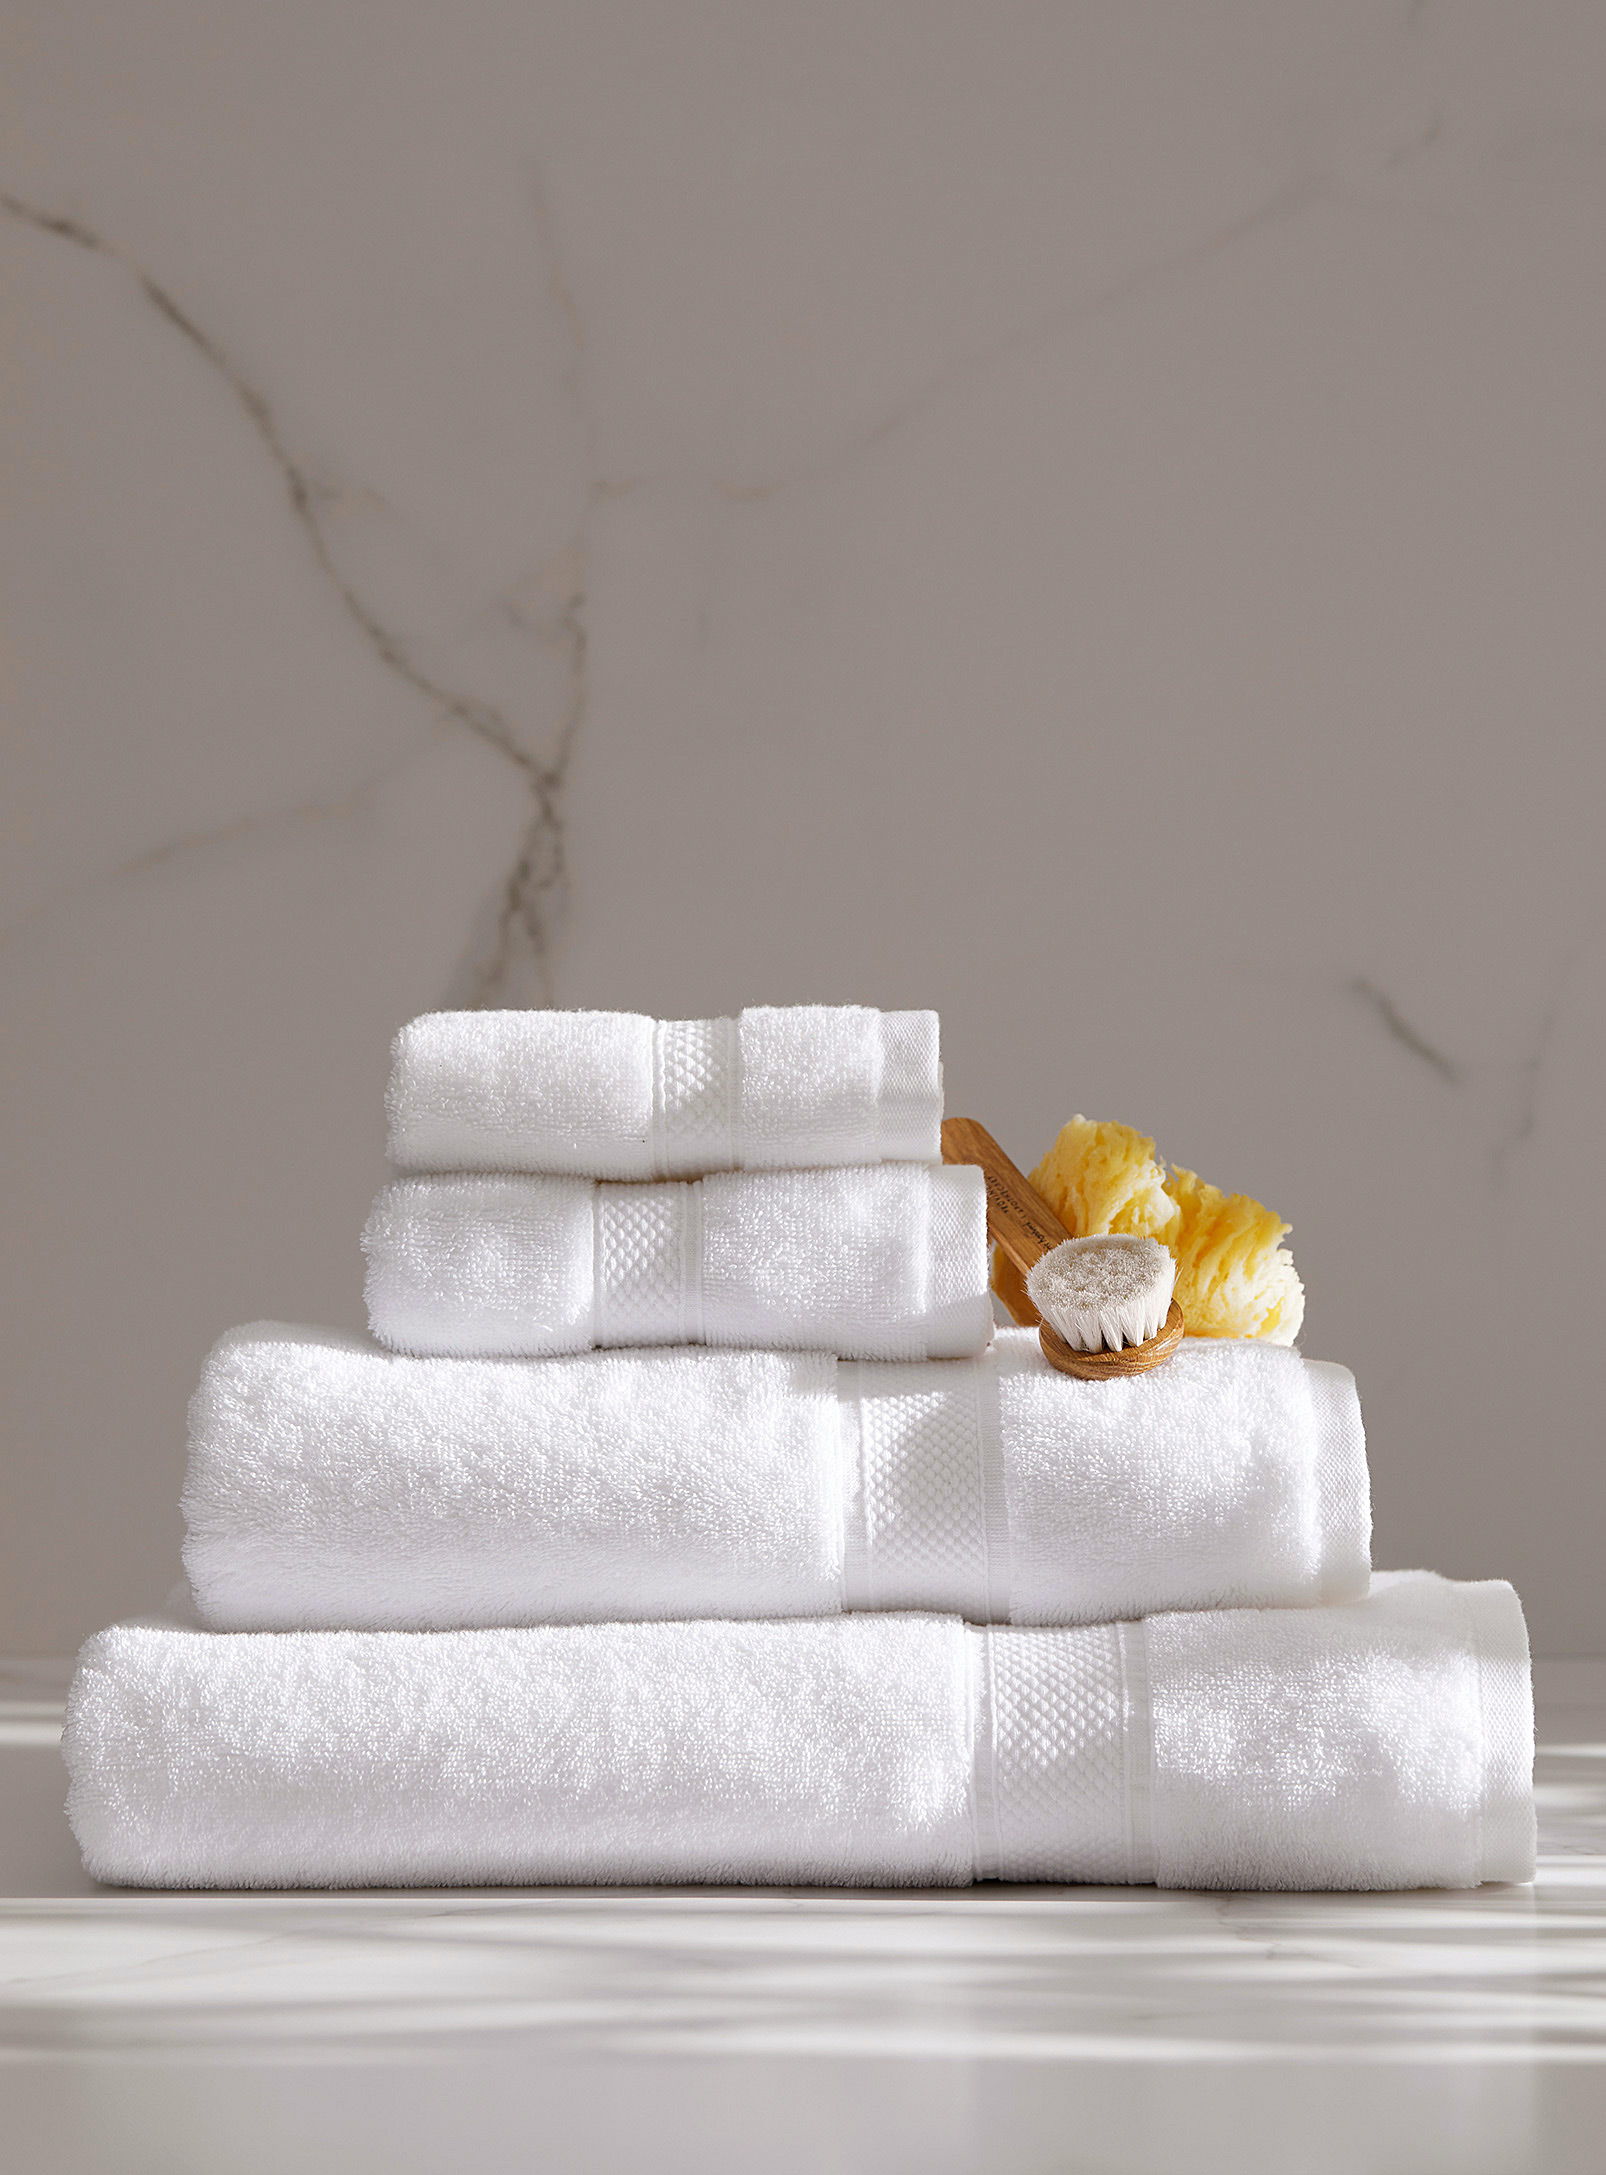 Hôtels Le Germain - Pima cotton towels